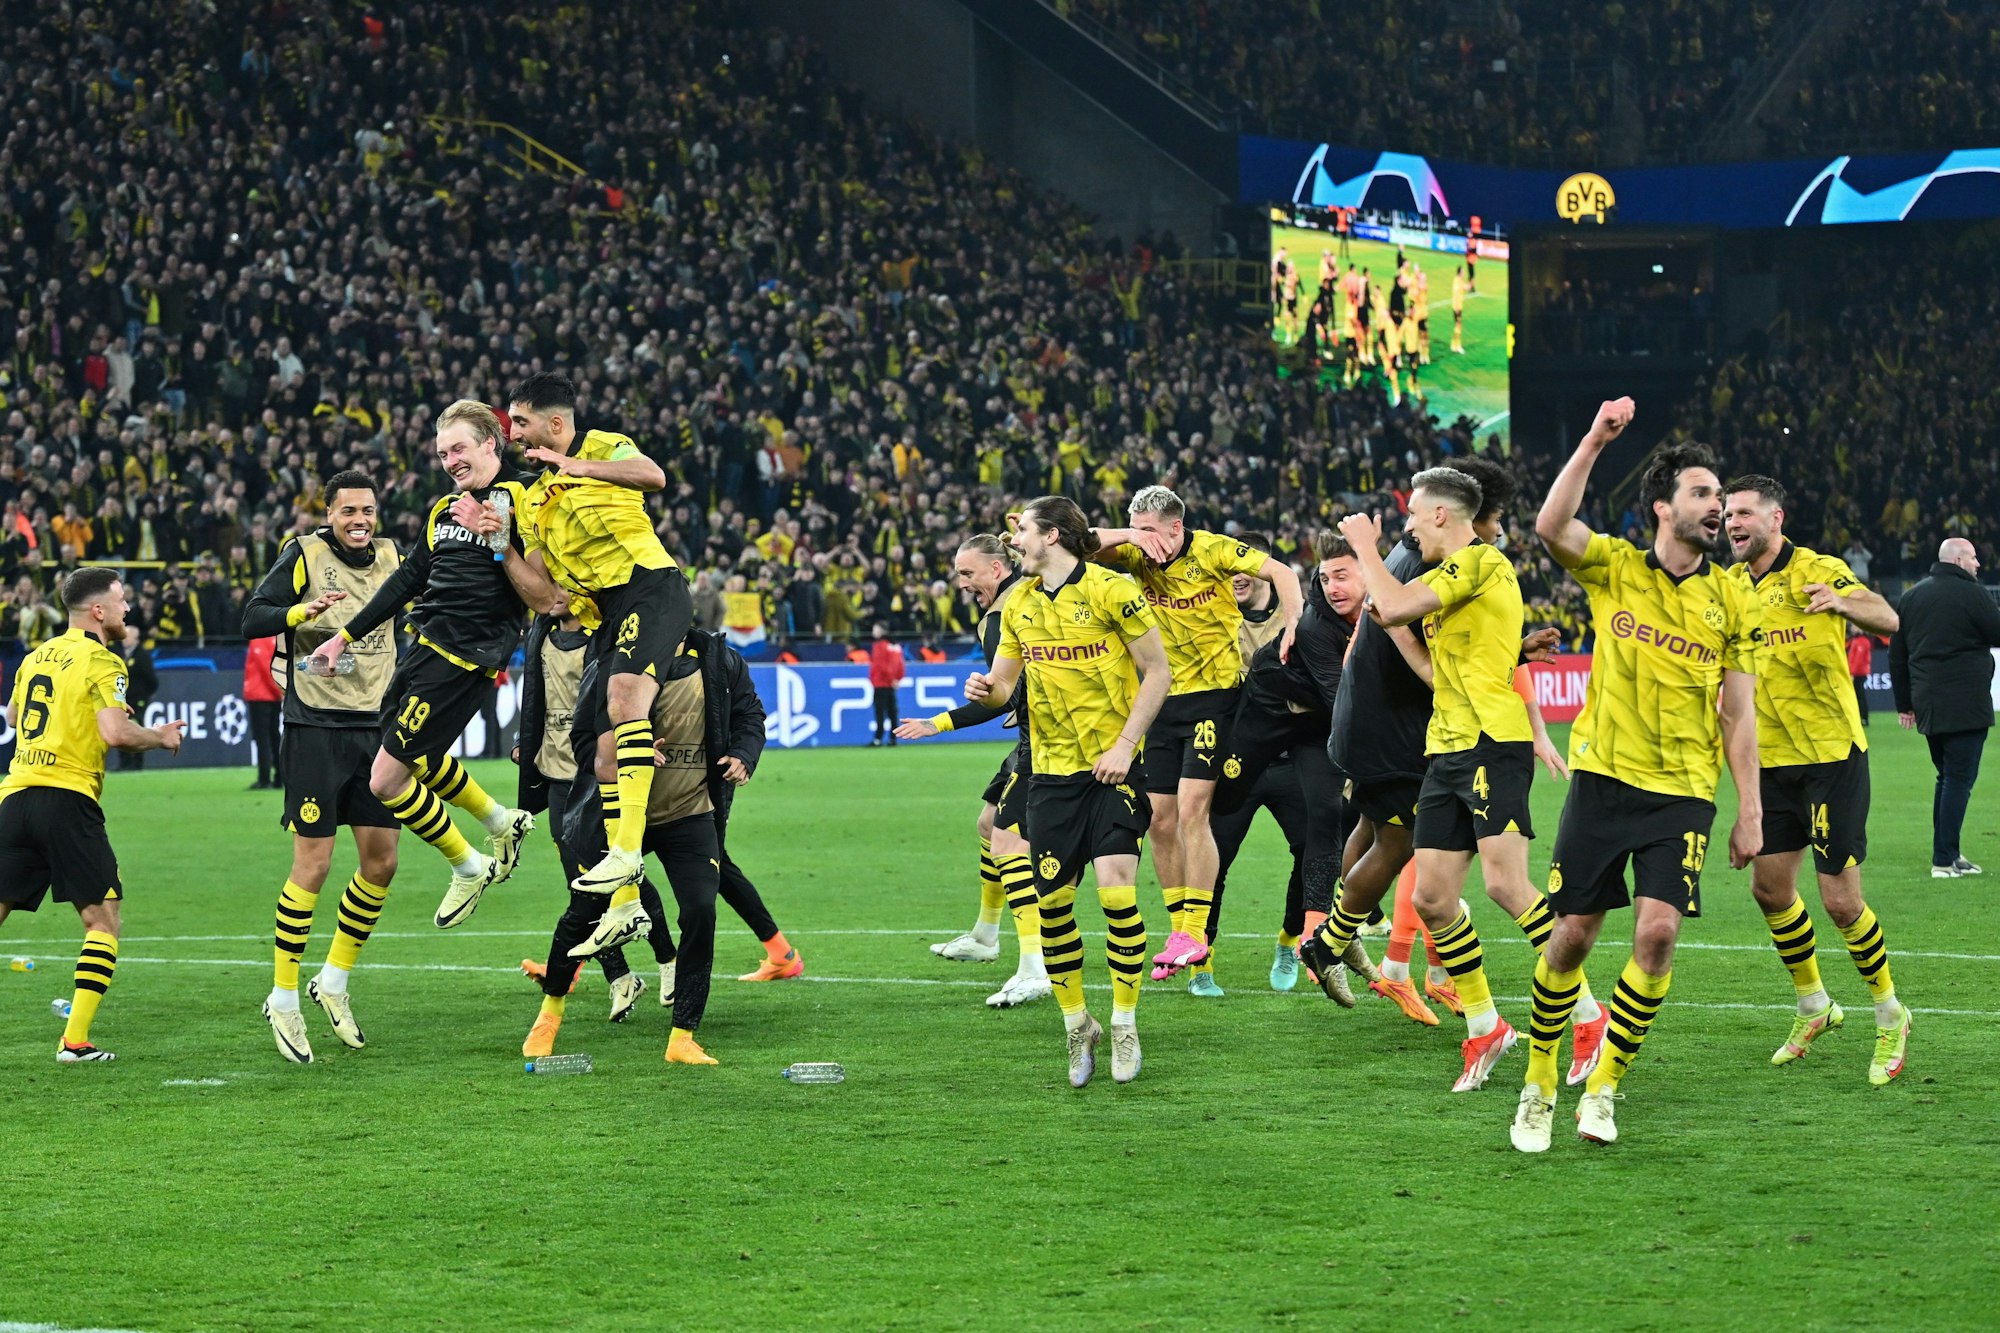 Die Dortmunder Spieler feiern ausgelassen den Einzug ins Champions League Halbfinale. Man sieht mehrere Spieler lachen und springen und im Hintergrund den vollbesetzten Signal-Iduna-Park.